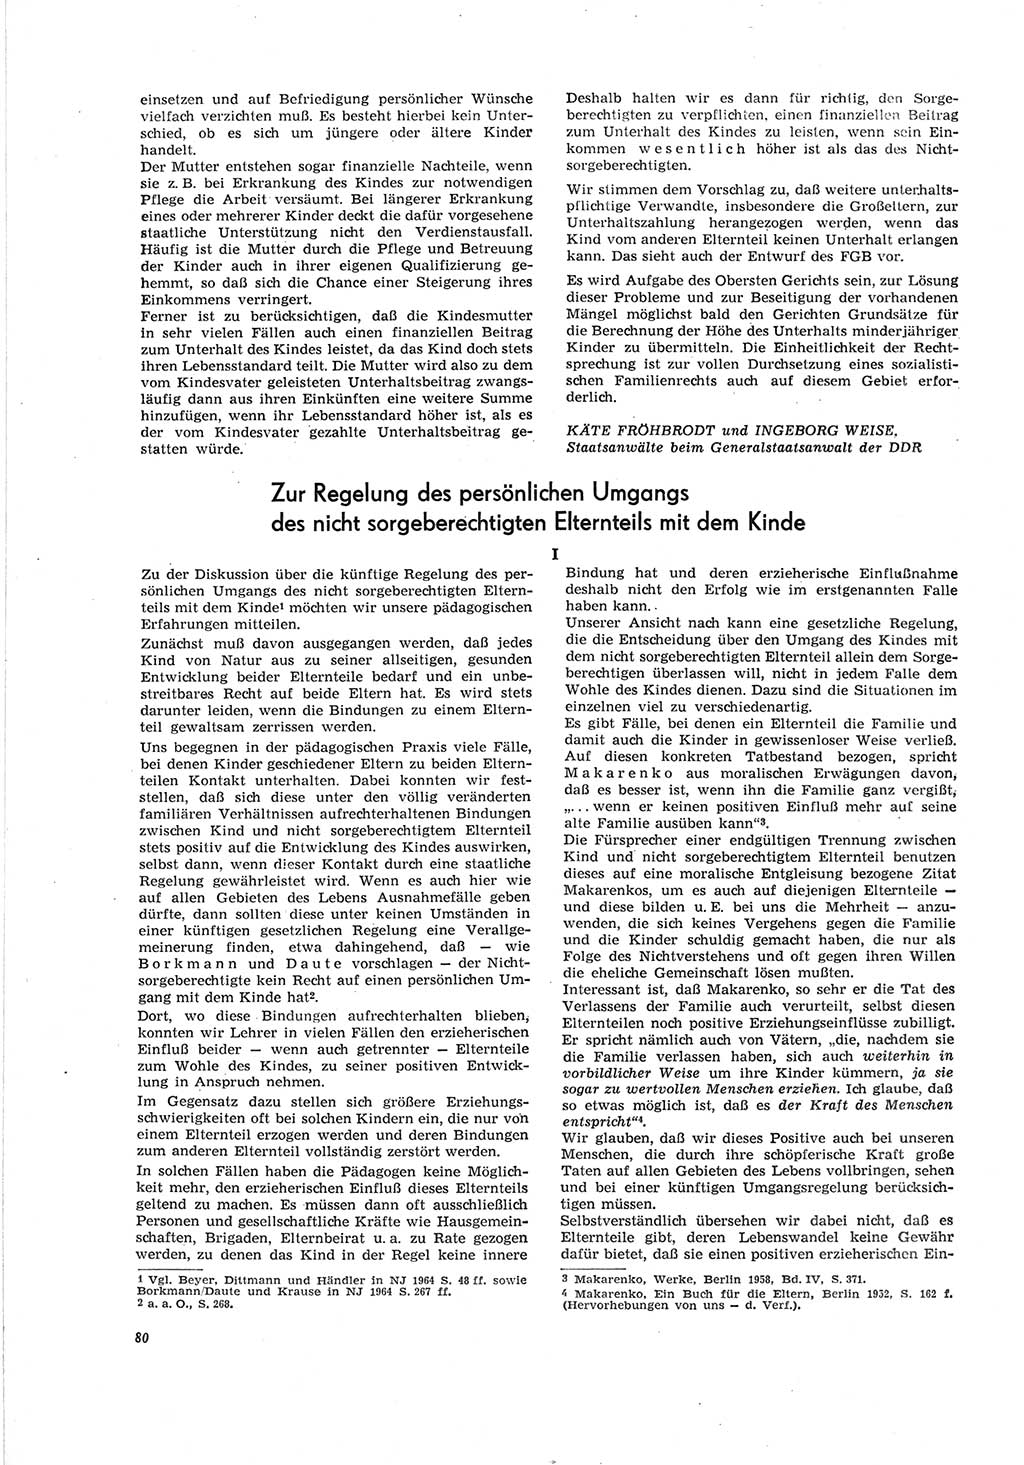 Neue Justiz (NJ), Zeitschrift für Recht und Rechtswissenschaft [Deutsche Demokratische Republik (DDR)], 19. Jahrgang 1965, Seite 80 (NJ DDR 1965, S. 80)